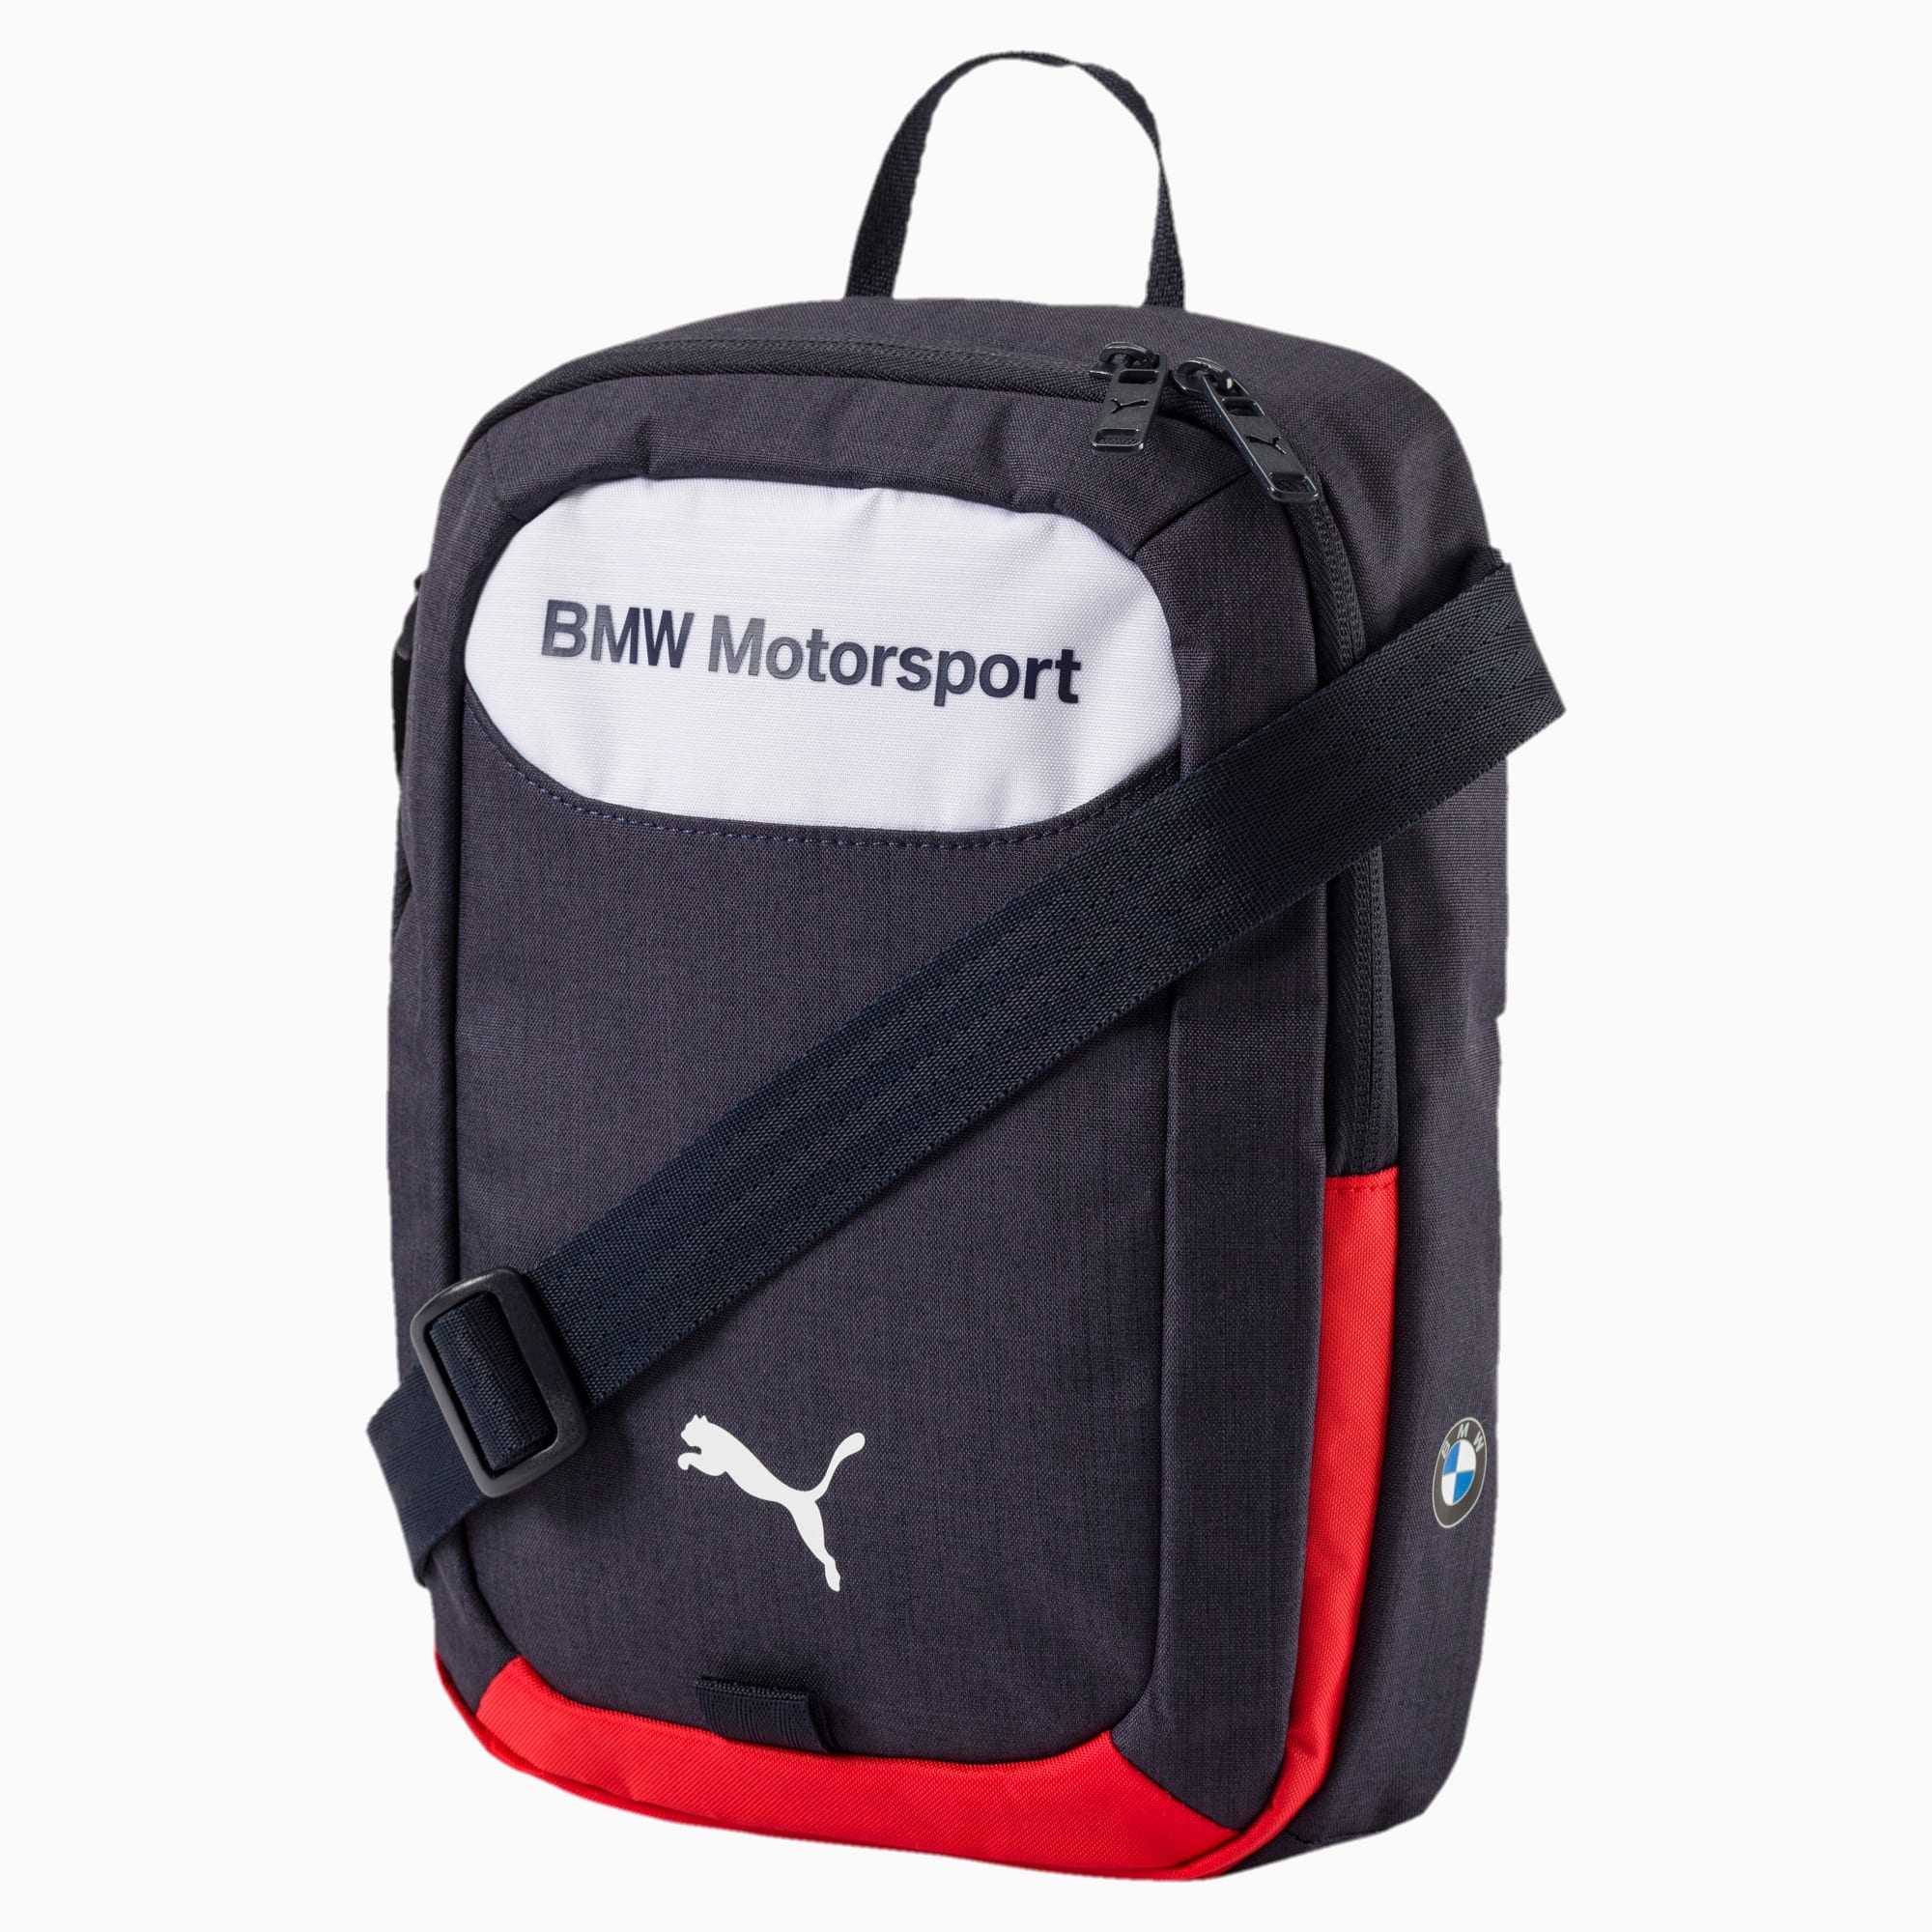 bmw motorsport messenger bag